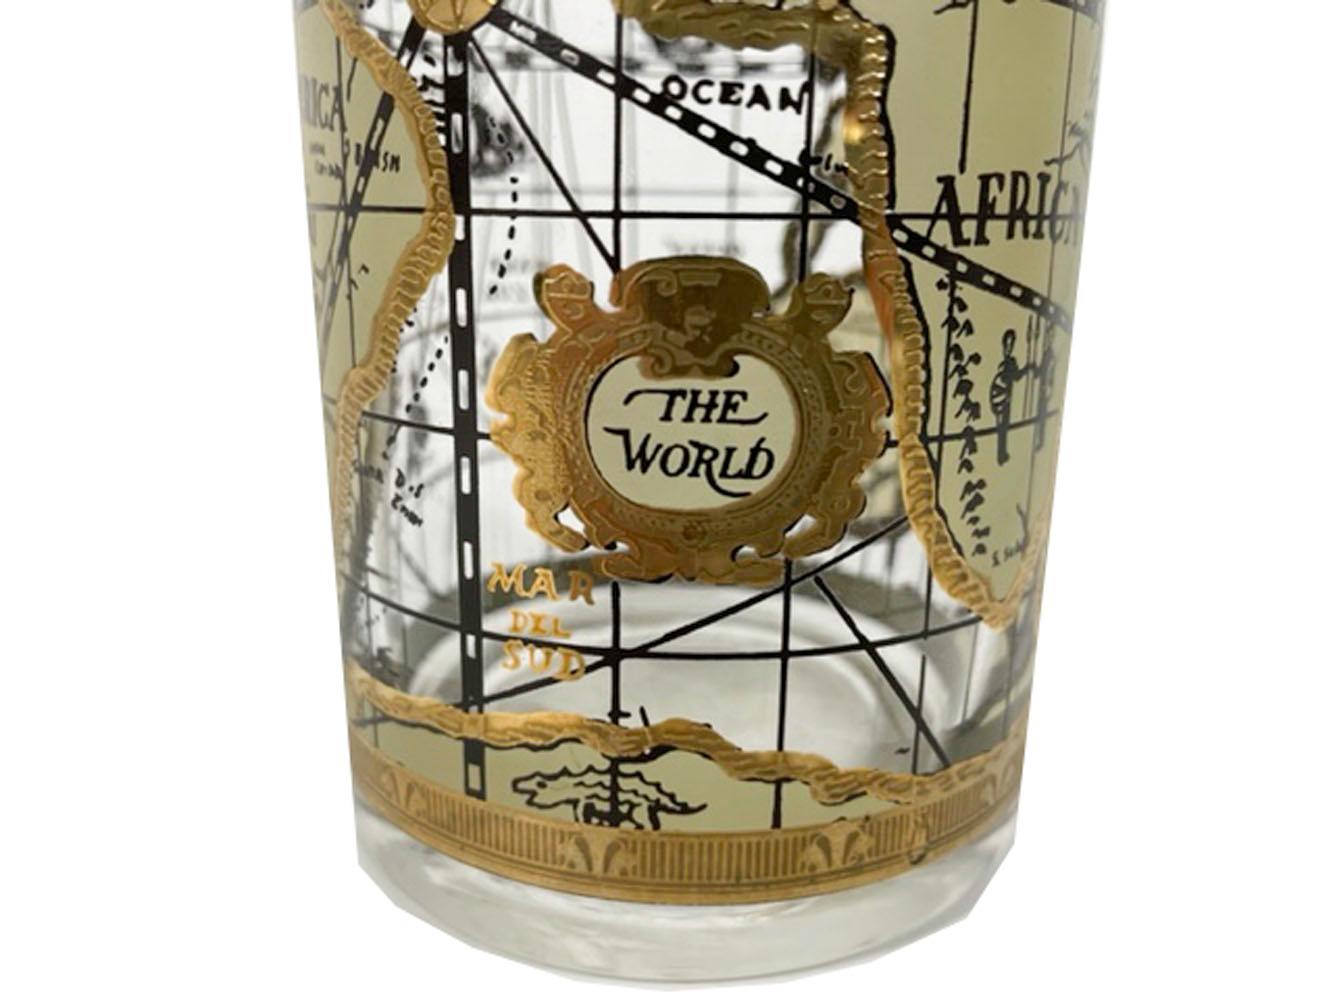 Pichet à cocktail vintage de CERA dans le motif Old World Map, avec une carte conçue pour ressembler à une carte antique sur parchemin dans les tons tans et or 22k.

Nous avons plusieurs annonces pour le motif Old World Map sous d'autres formes,